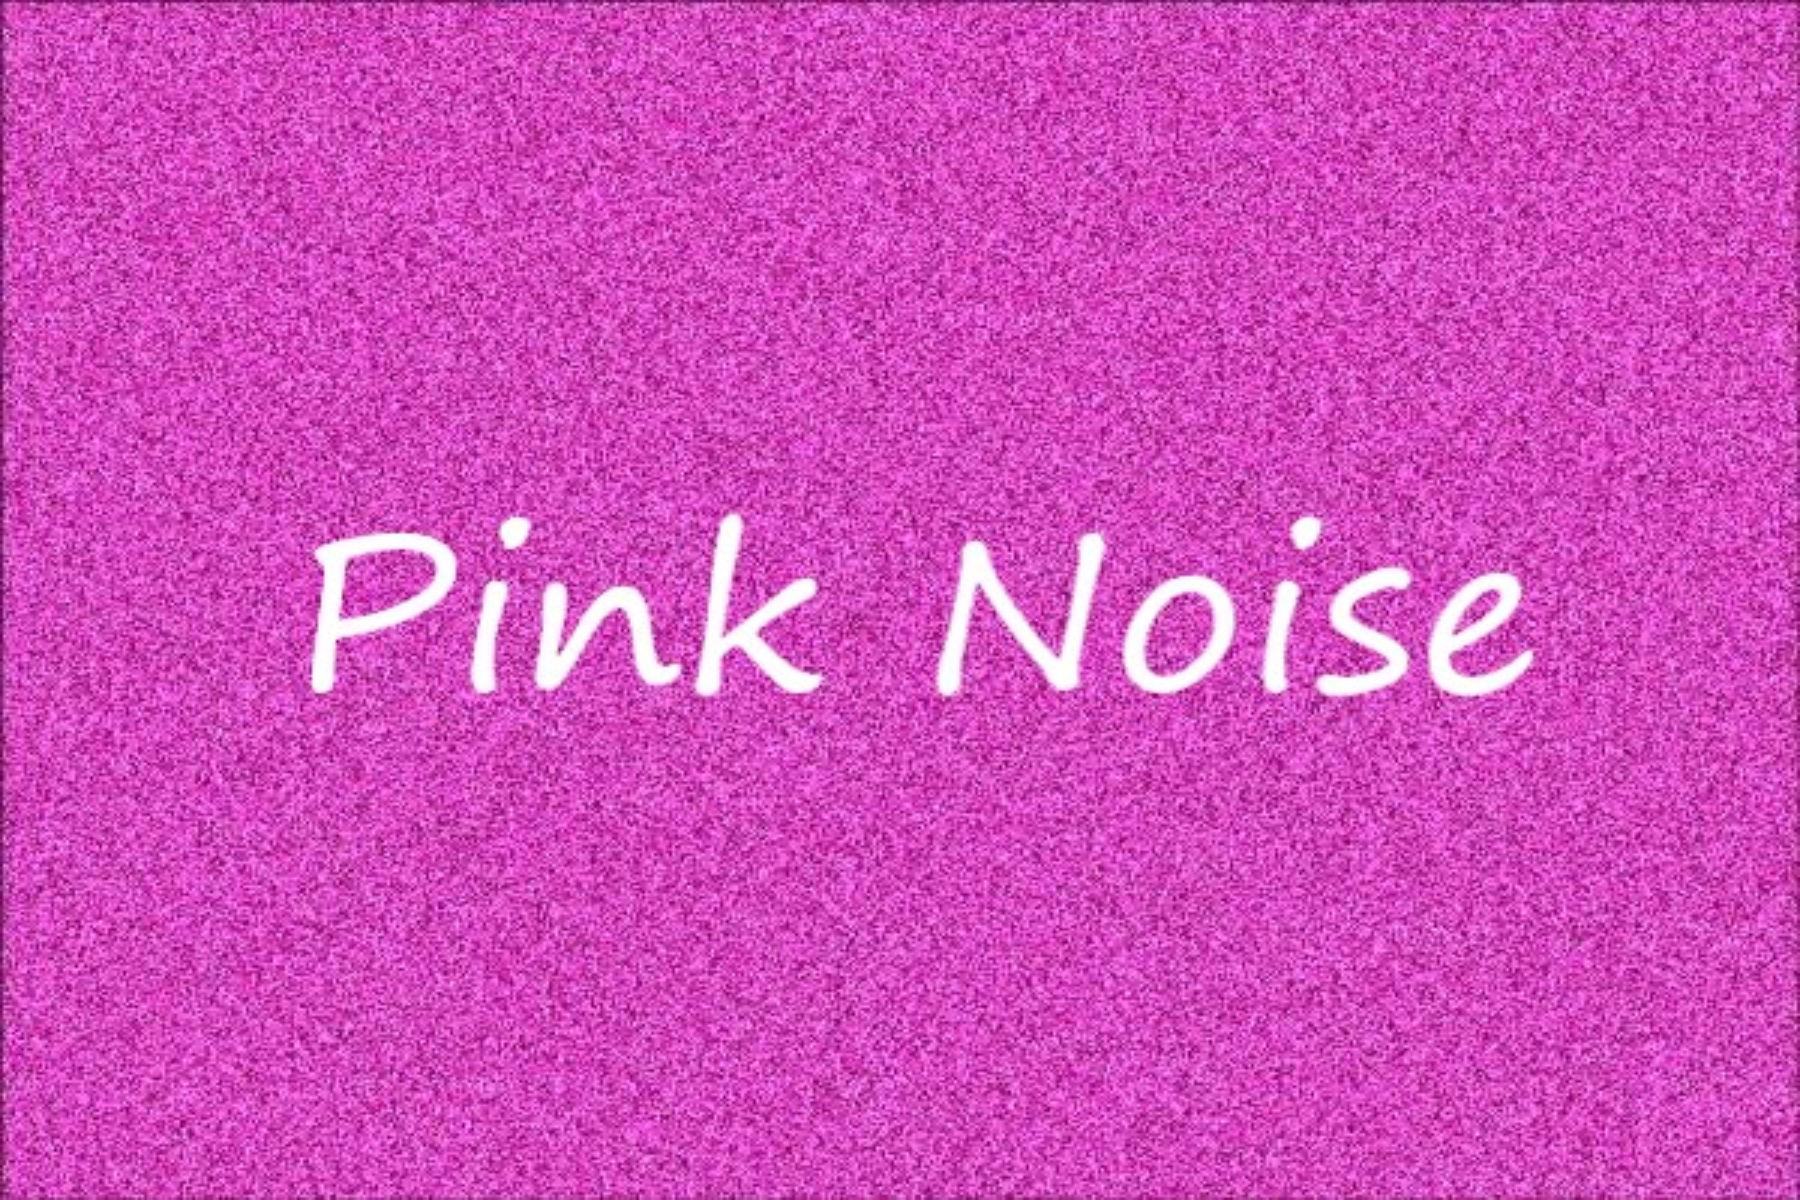 Ροζ θόρυβος: Ο ροζ θόρυβος μπορεί να σας βοηθήσει να κοιμηθείτε καλύτερα τη νύχτα